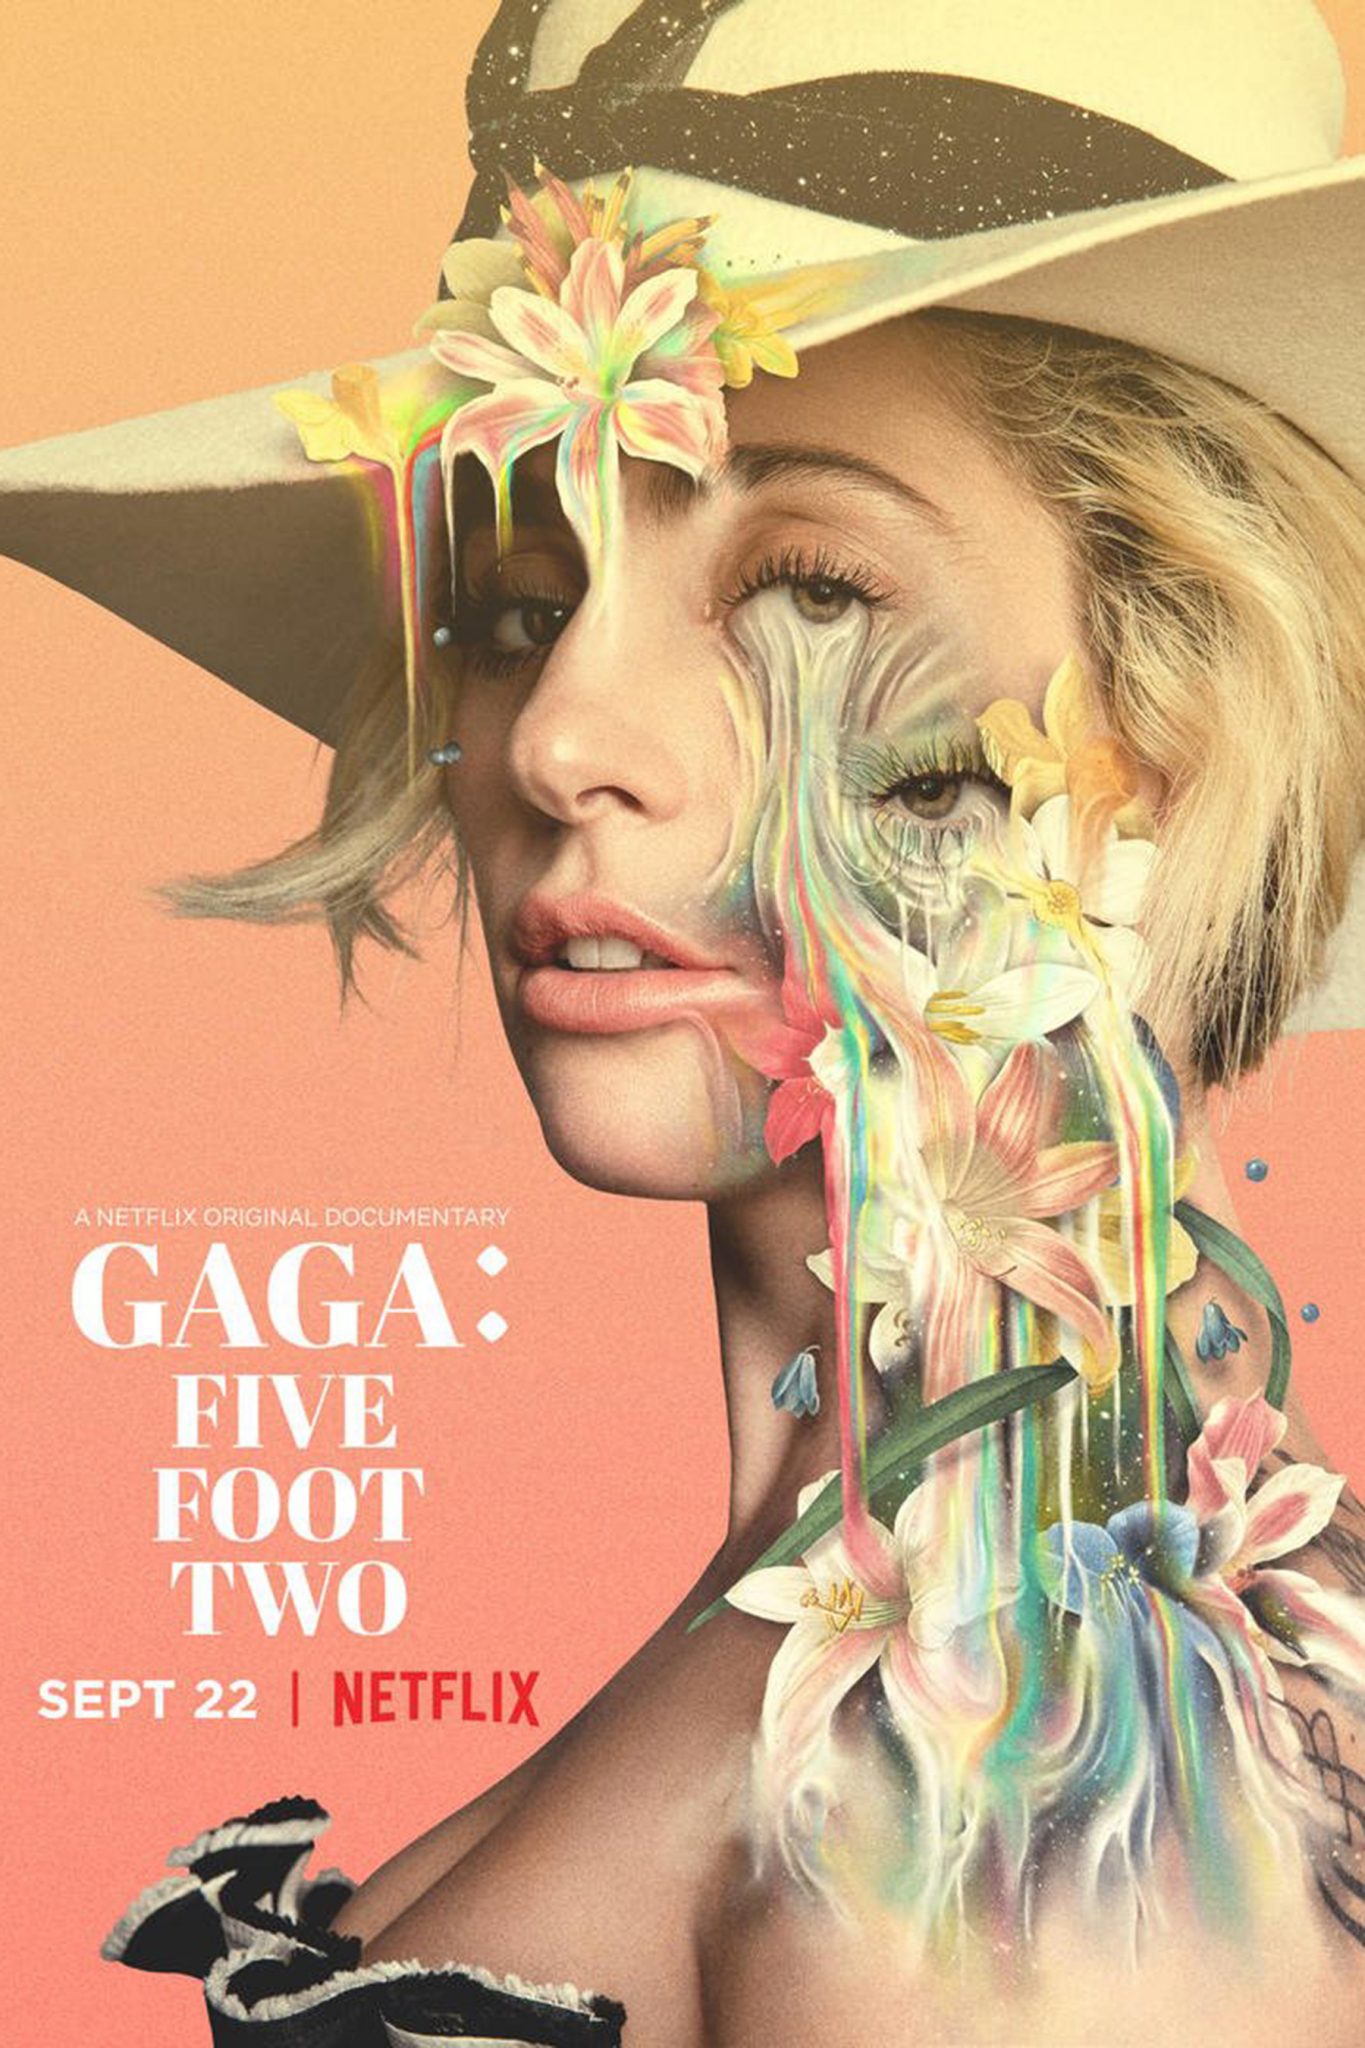 Netflix Libera Trailer do Documentário Sobre a Diva do Pop Lady Gaga 7